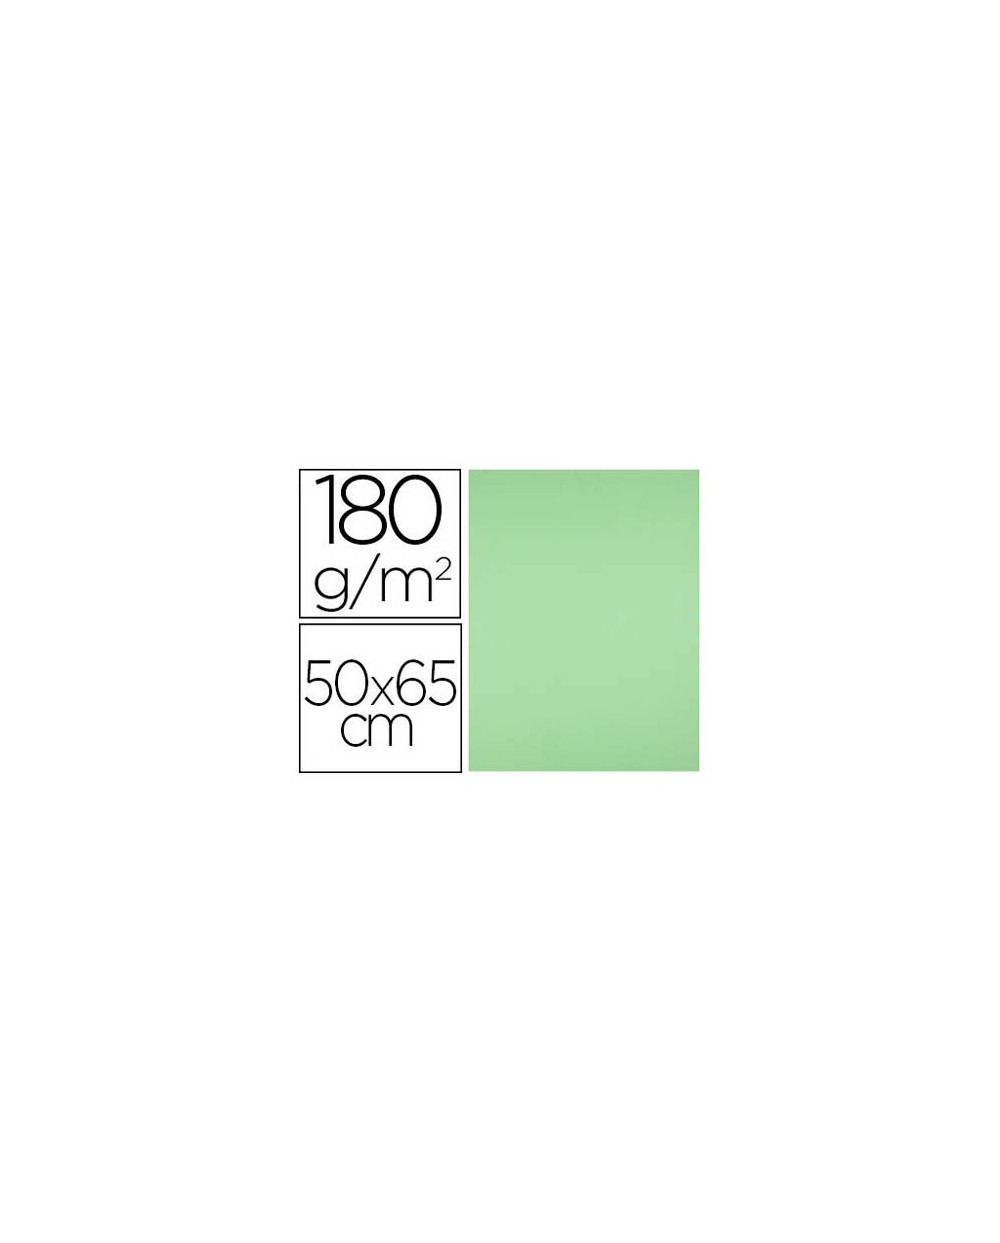 Cartulina liderpapel 50x65 cm 180g m2 verde hierba paquete de 25